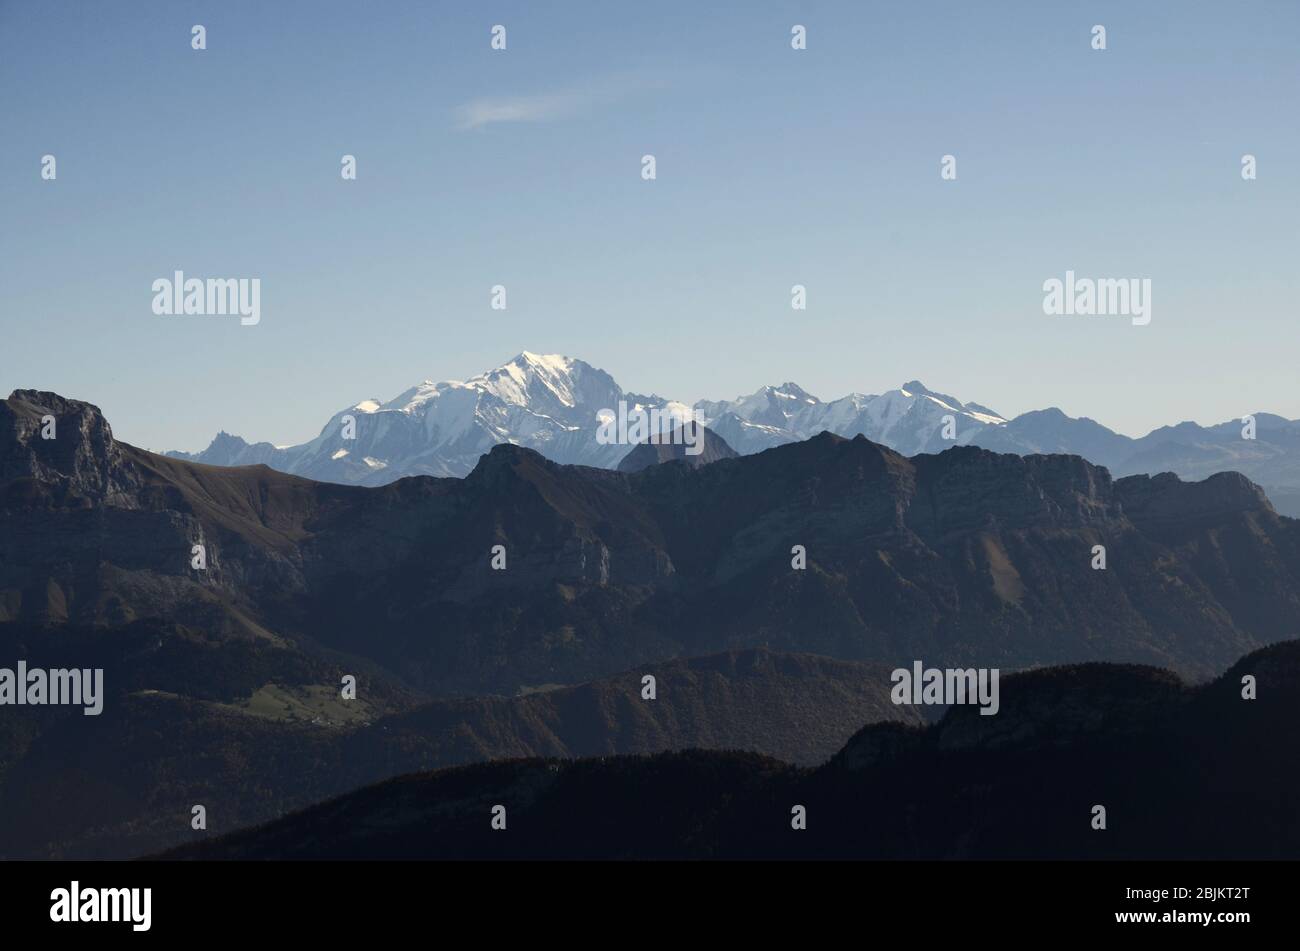 Mont-Blanc et Tournette paysage de montagnes de semnoz près d'Annecy, savoie, france Banque D'Images